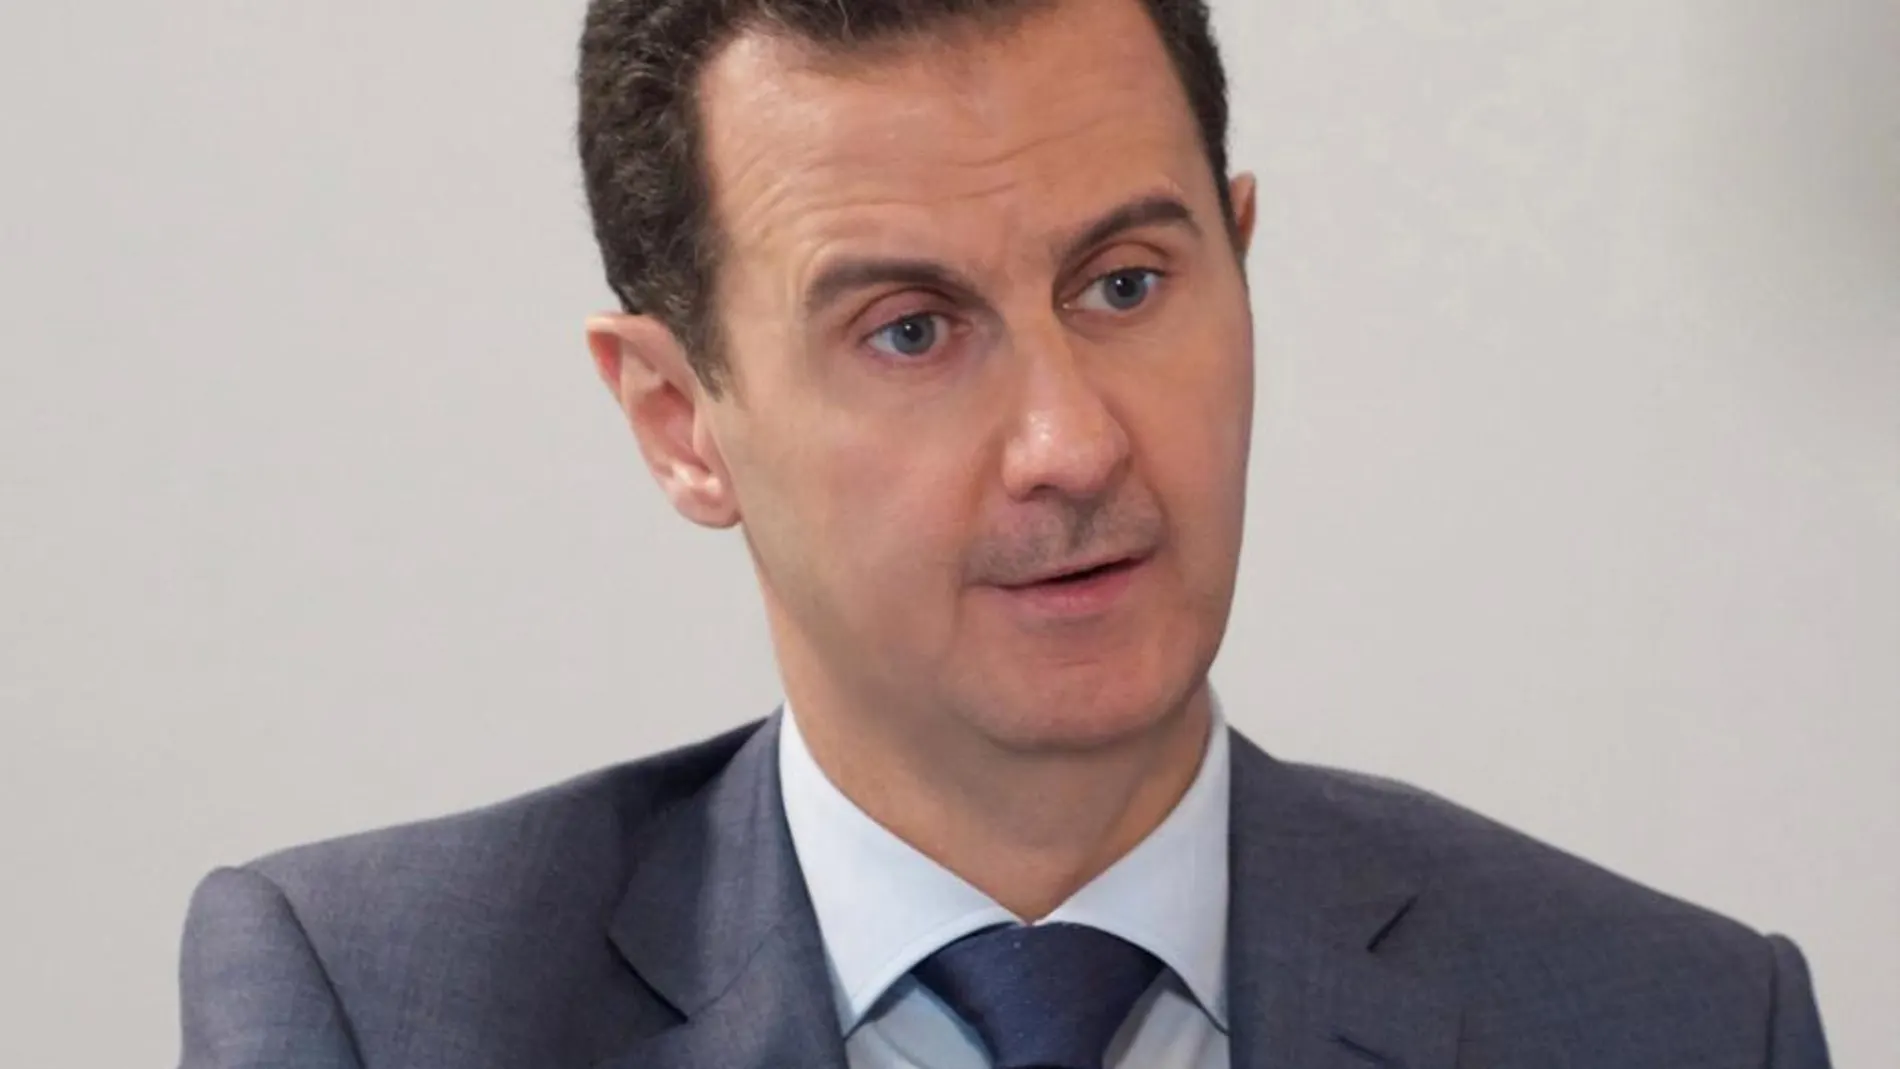 La denuncia relata cómo el Gobierno de Al-Assad, cometió, a través de sus fuerzas de seguridad e inteligencia, un delito de terrorismo contra la población civil